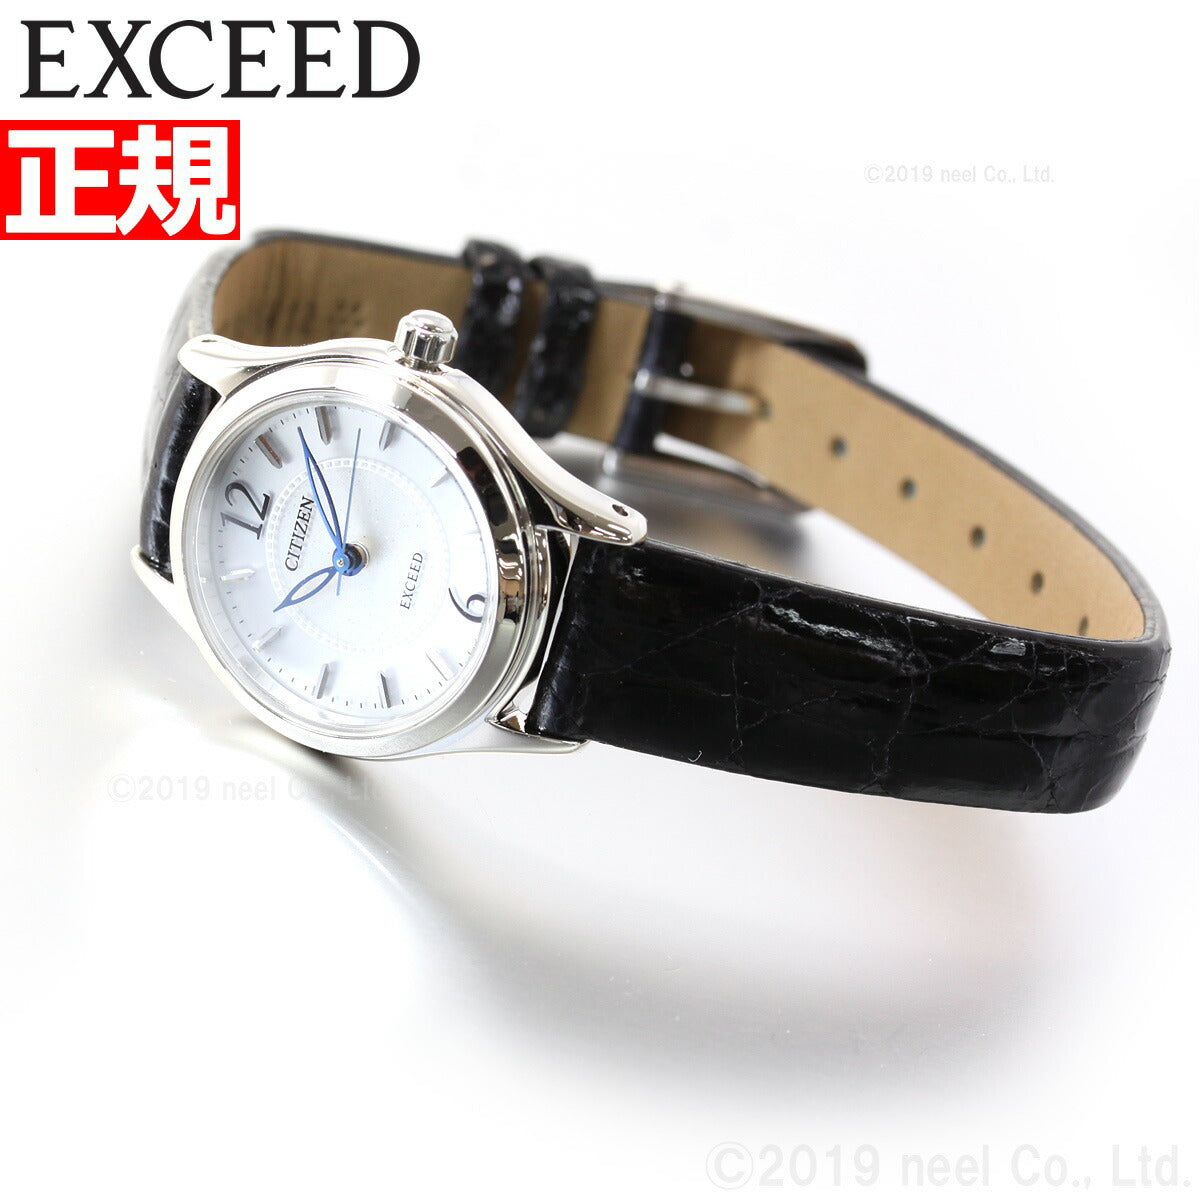 シチズン エクシード CITIZEN EXCEED エコドライブ ソーラー 腕時計 レディース EX2060-07A【シチズン エクシード】【正規品】【送料無料】